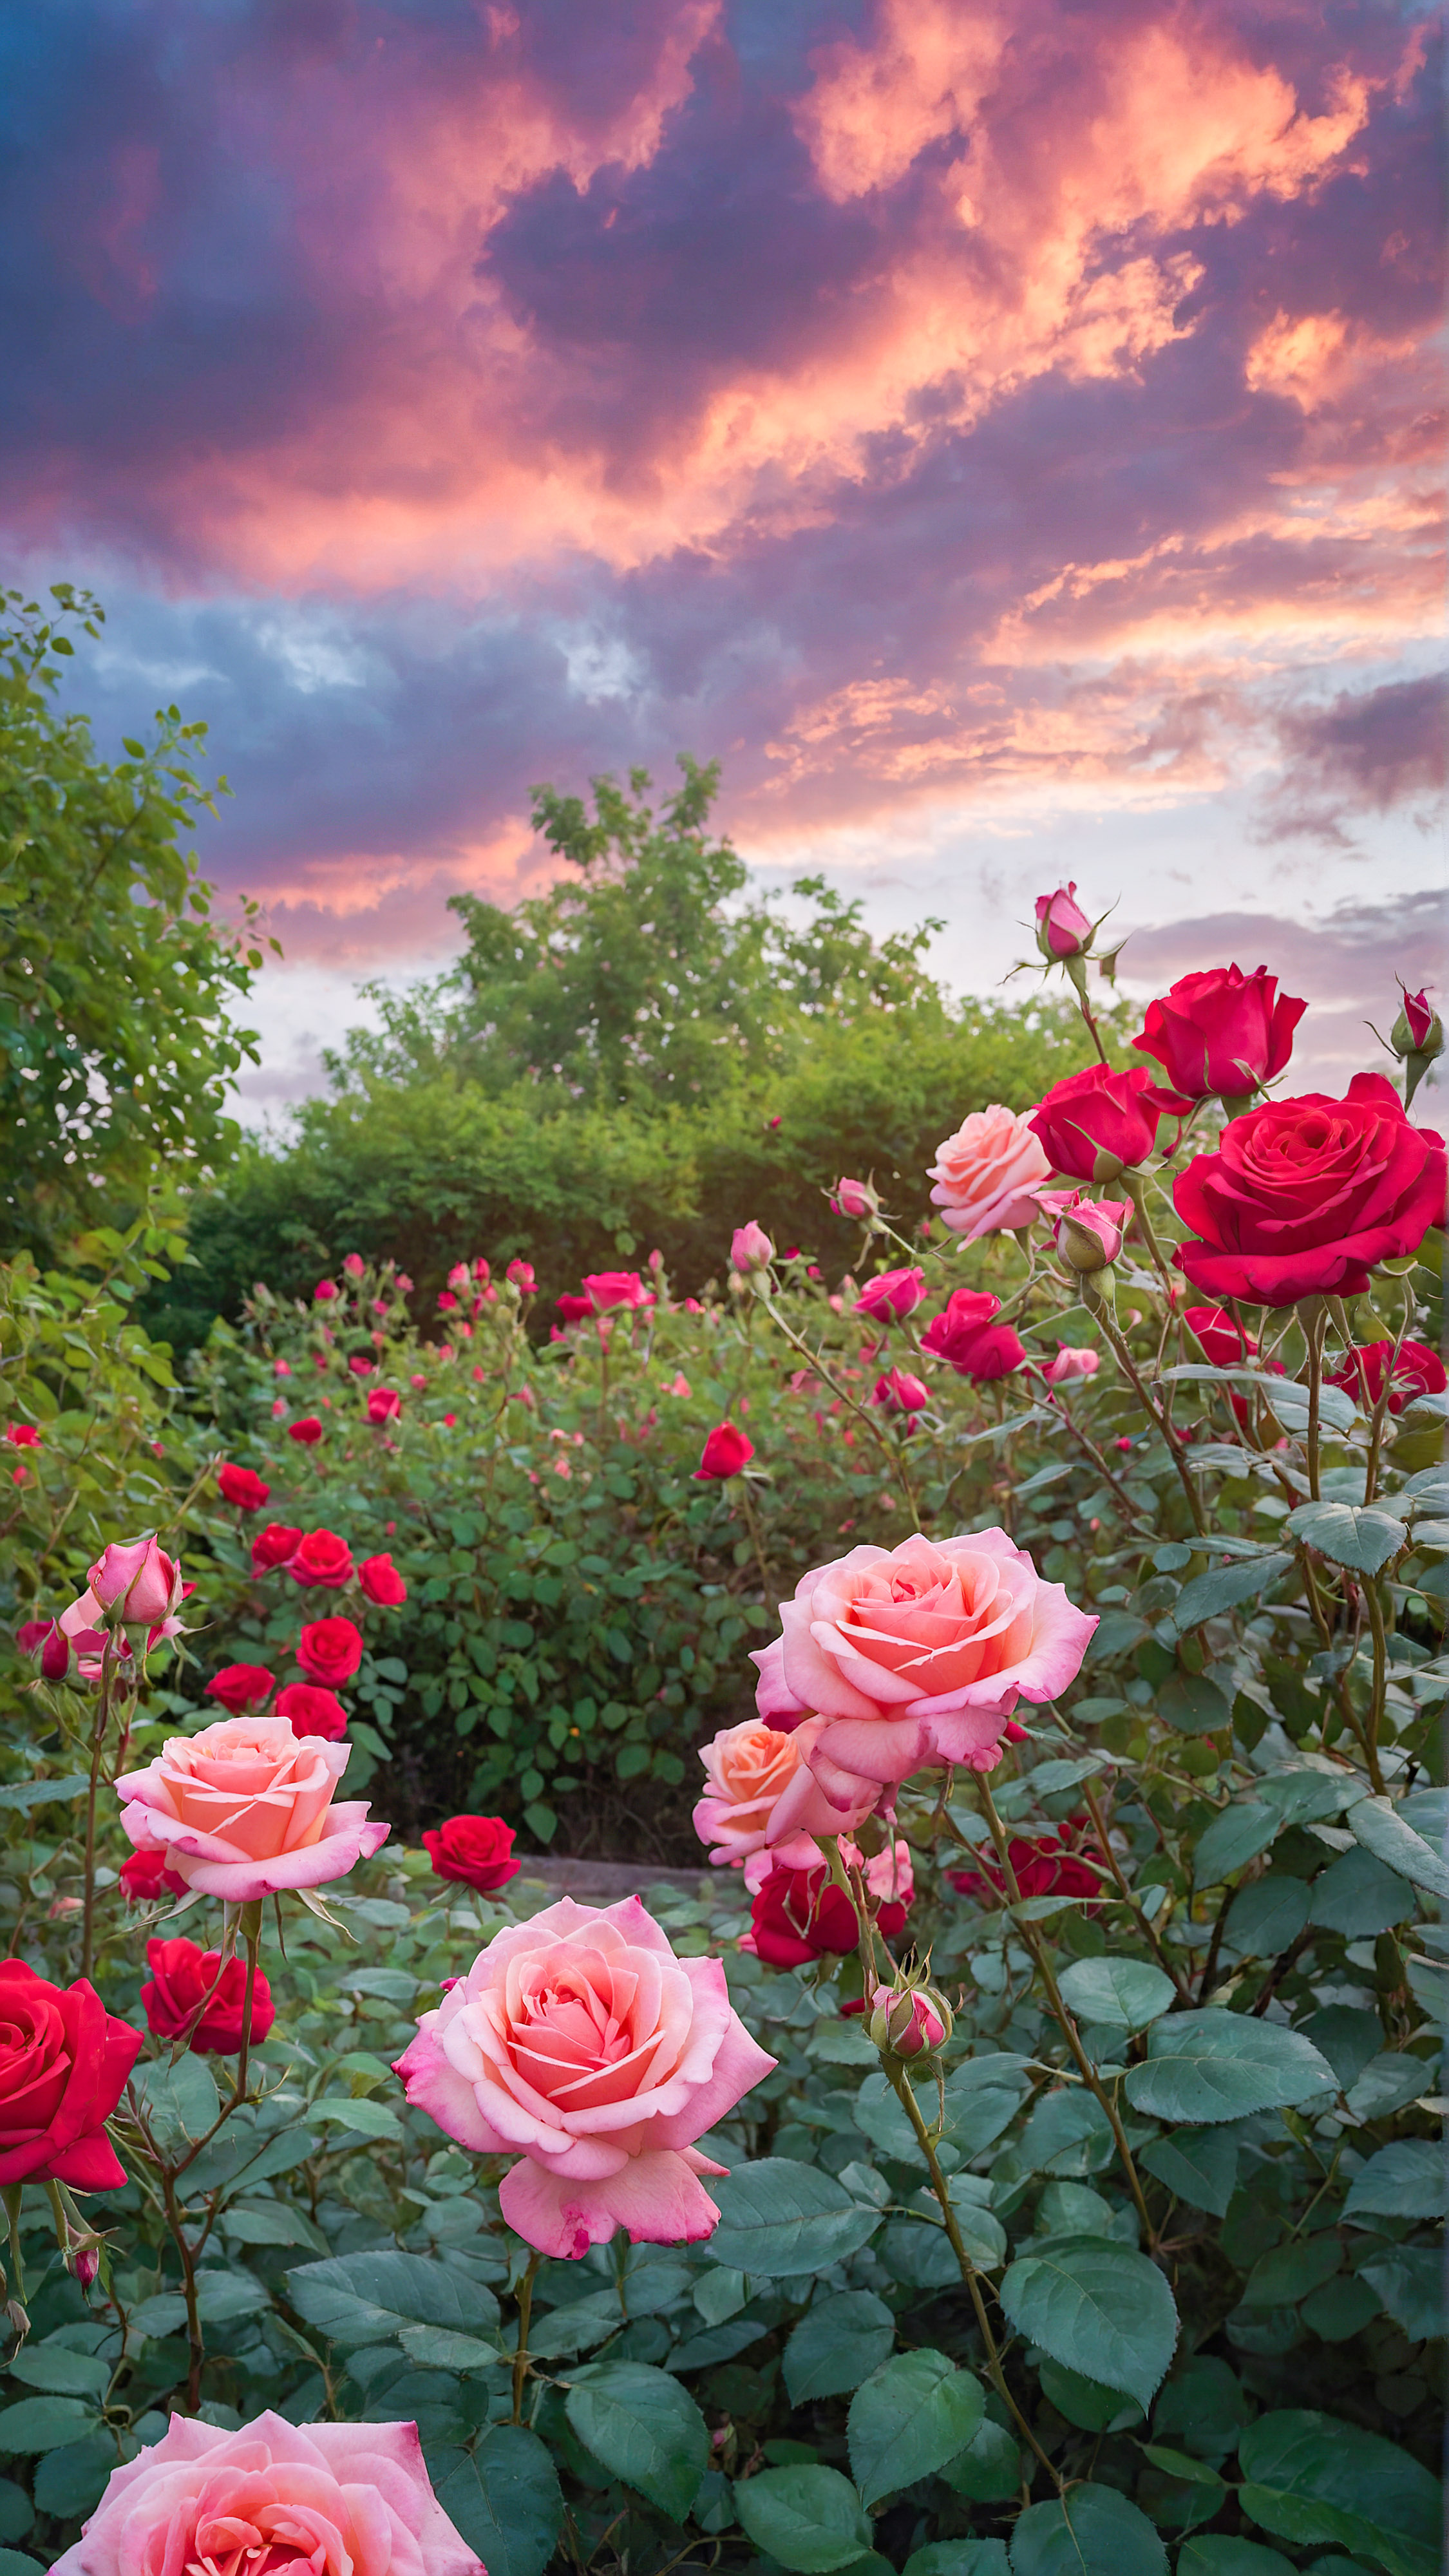 Transformez l'apparence de votre appareil avec un fond d'écran HD mignon pour iPhone, présentant un jardin vibrant rempli de roses roses et rouges en fleurs sous un ciel lumineux et nuageux. 